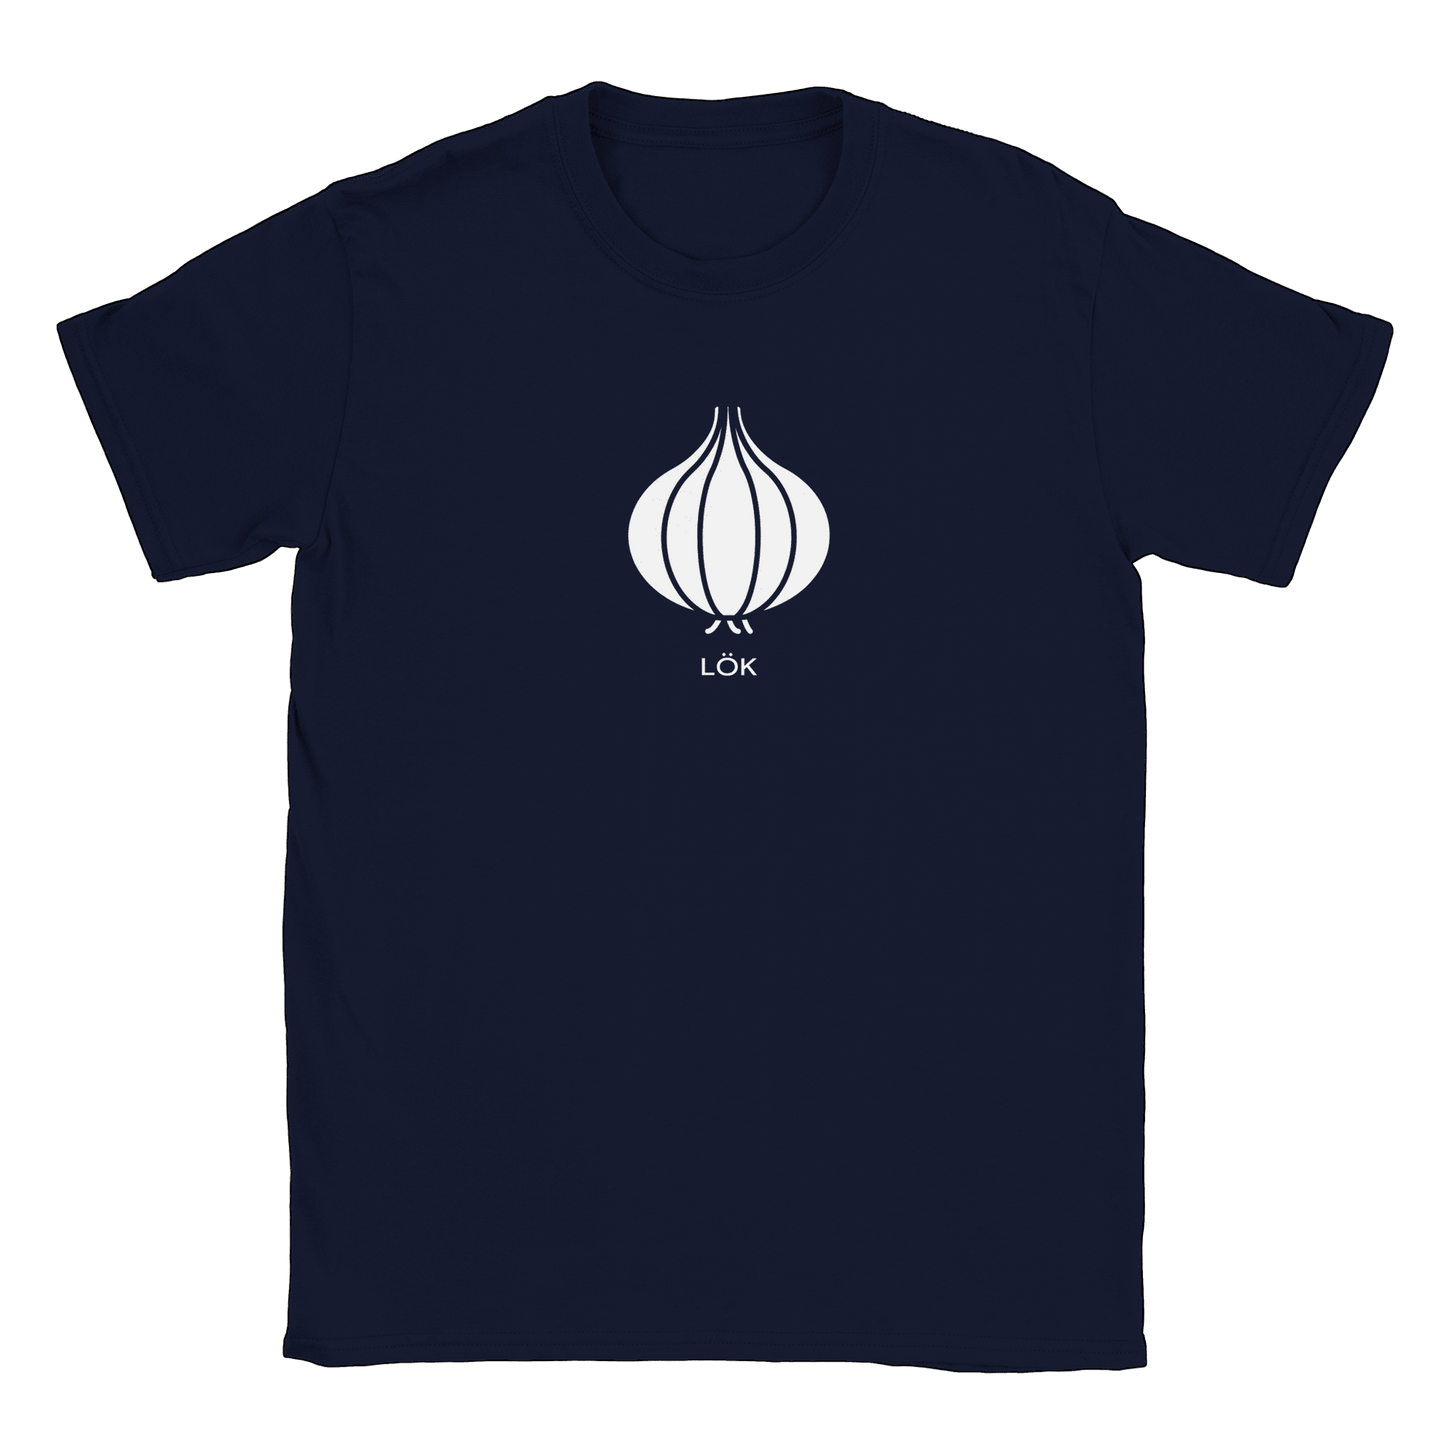 Lök - T-shirt Navy